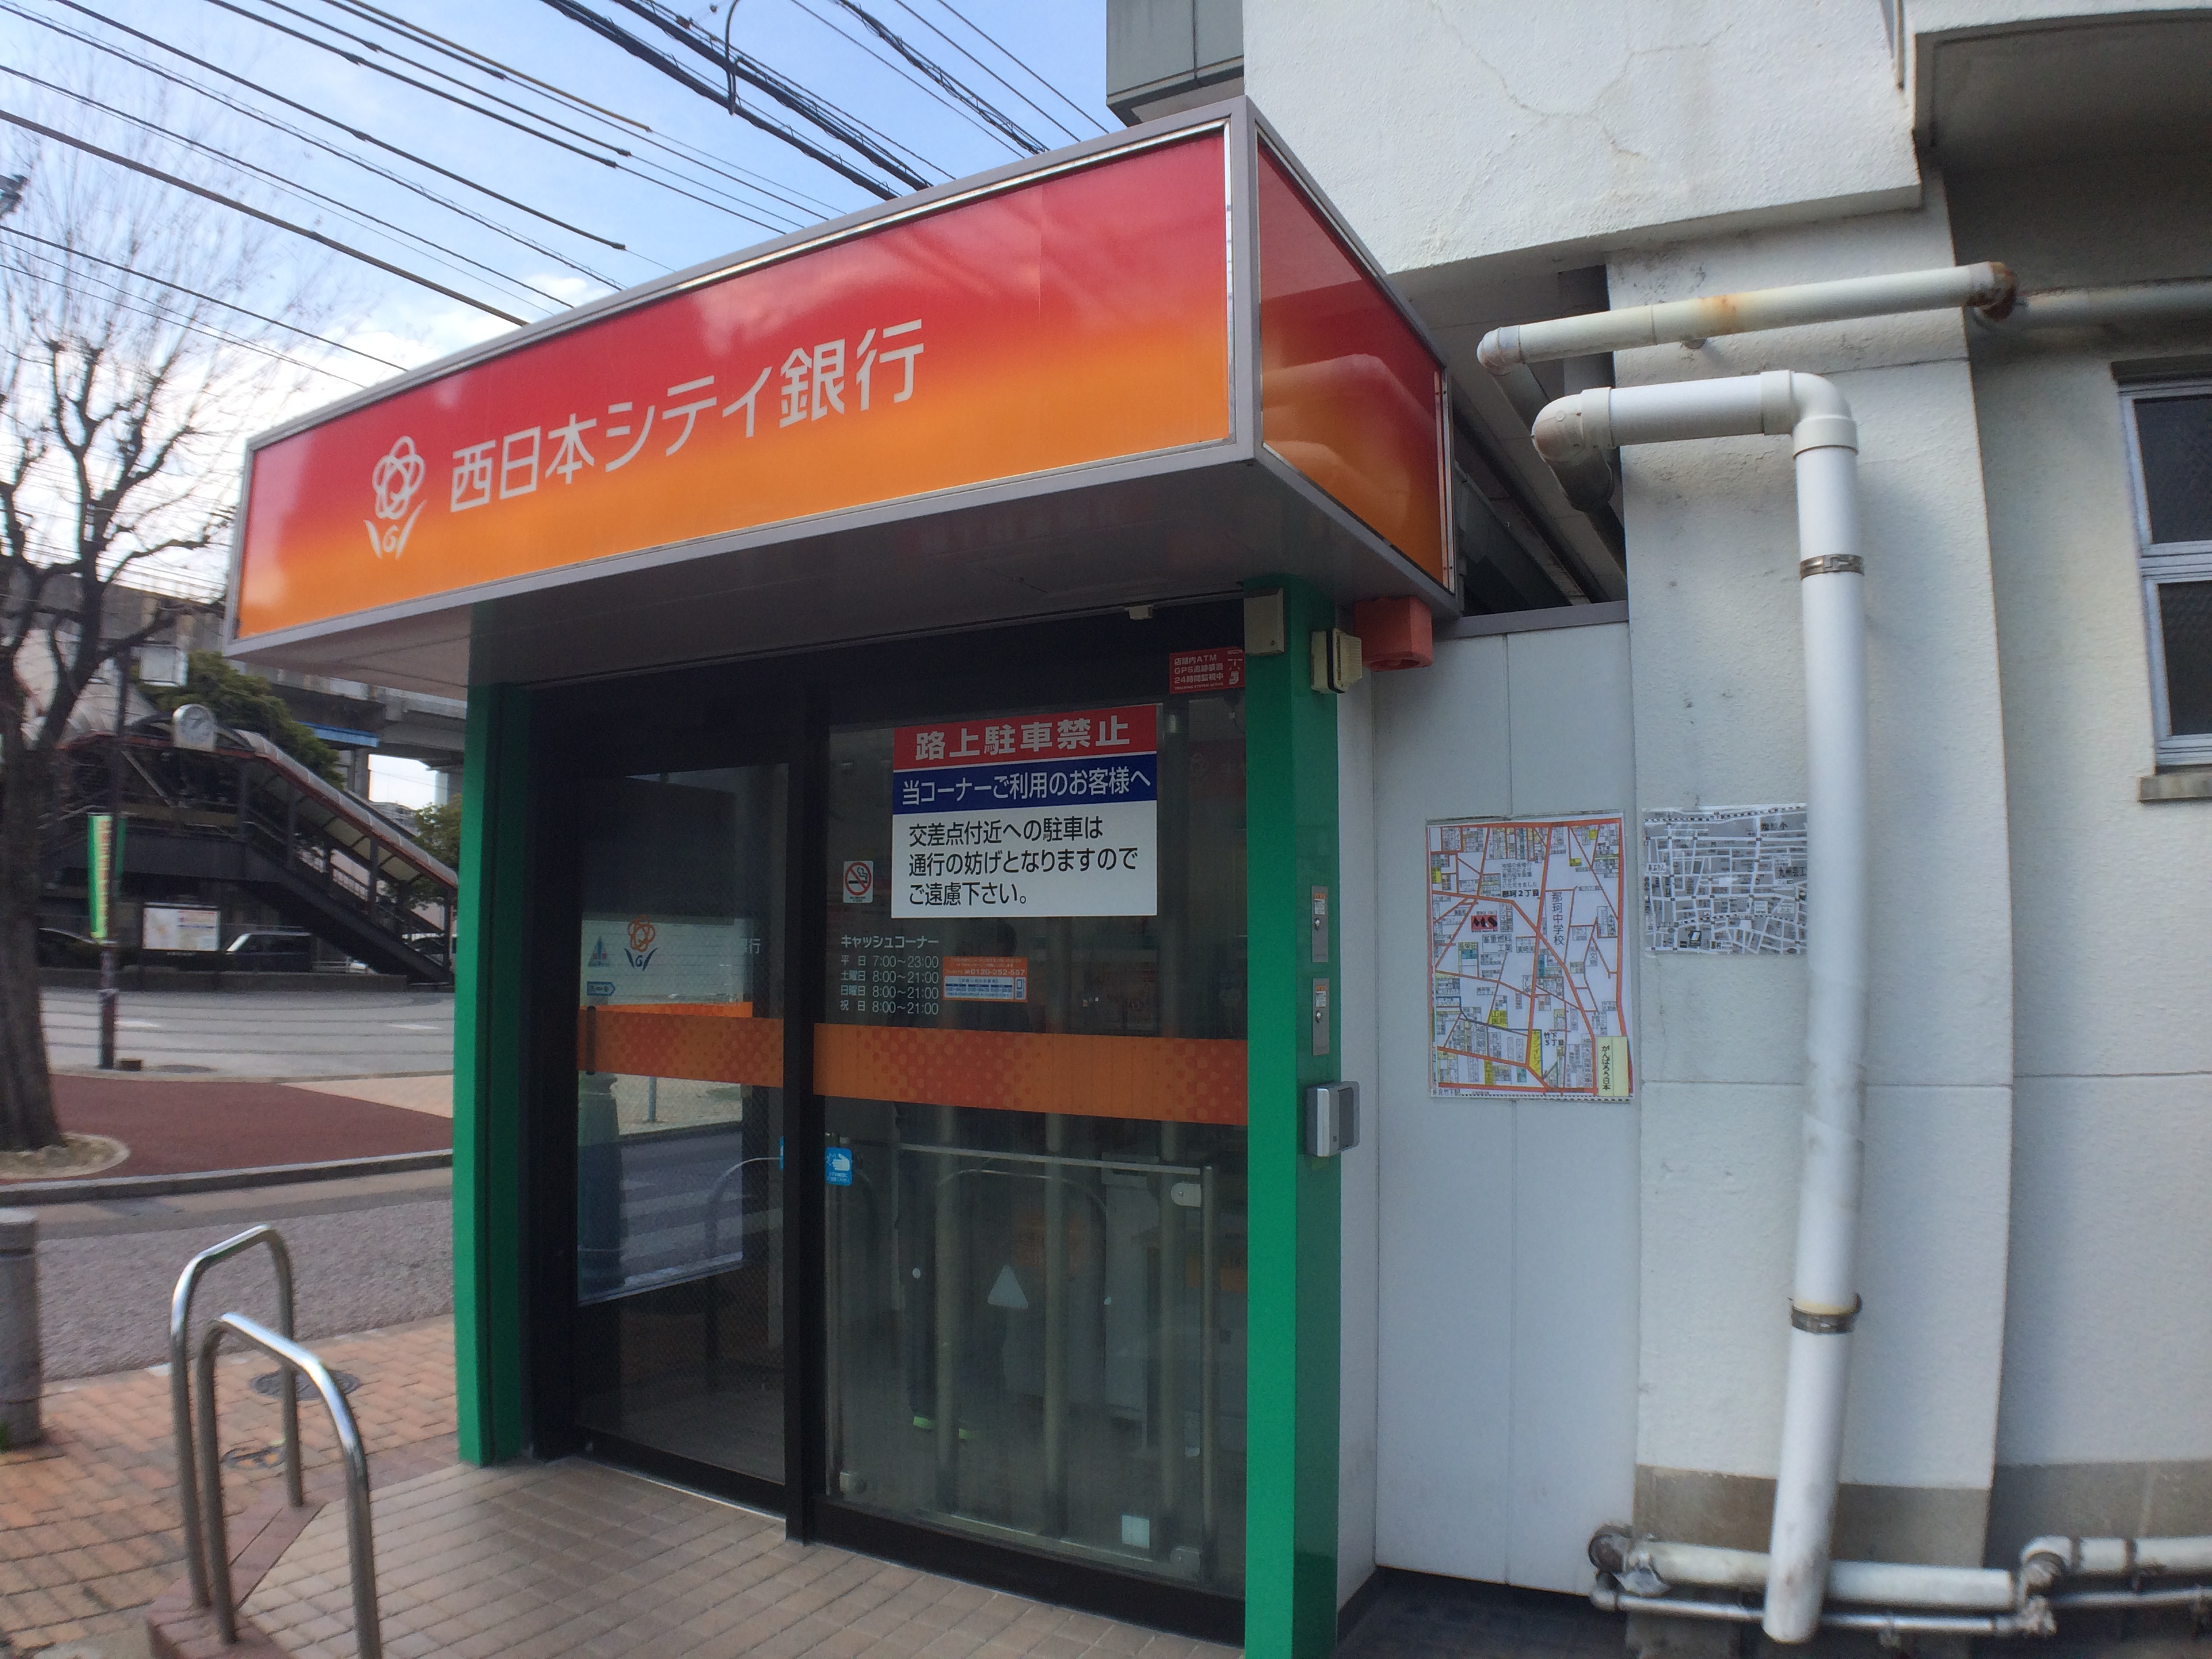 銀行：西日本シティ銀行 竹下駅前さく病院 (ATM)　676m